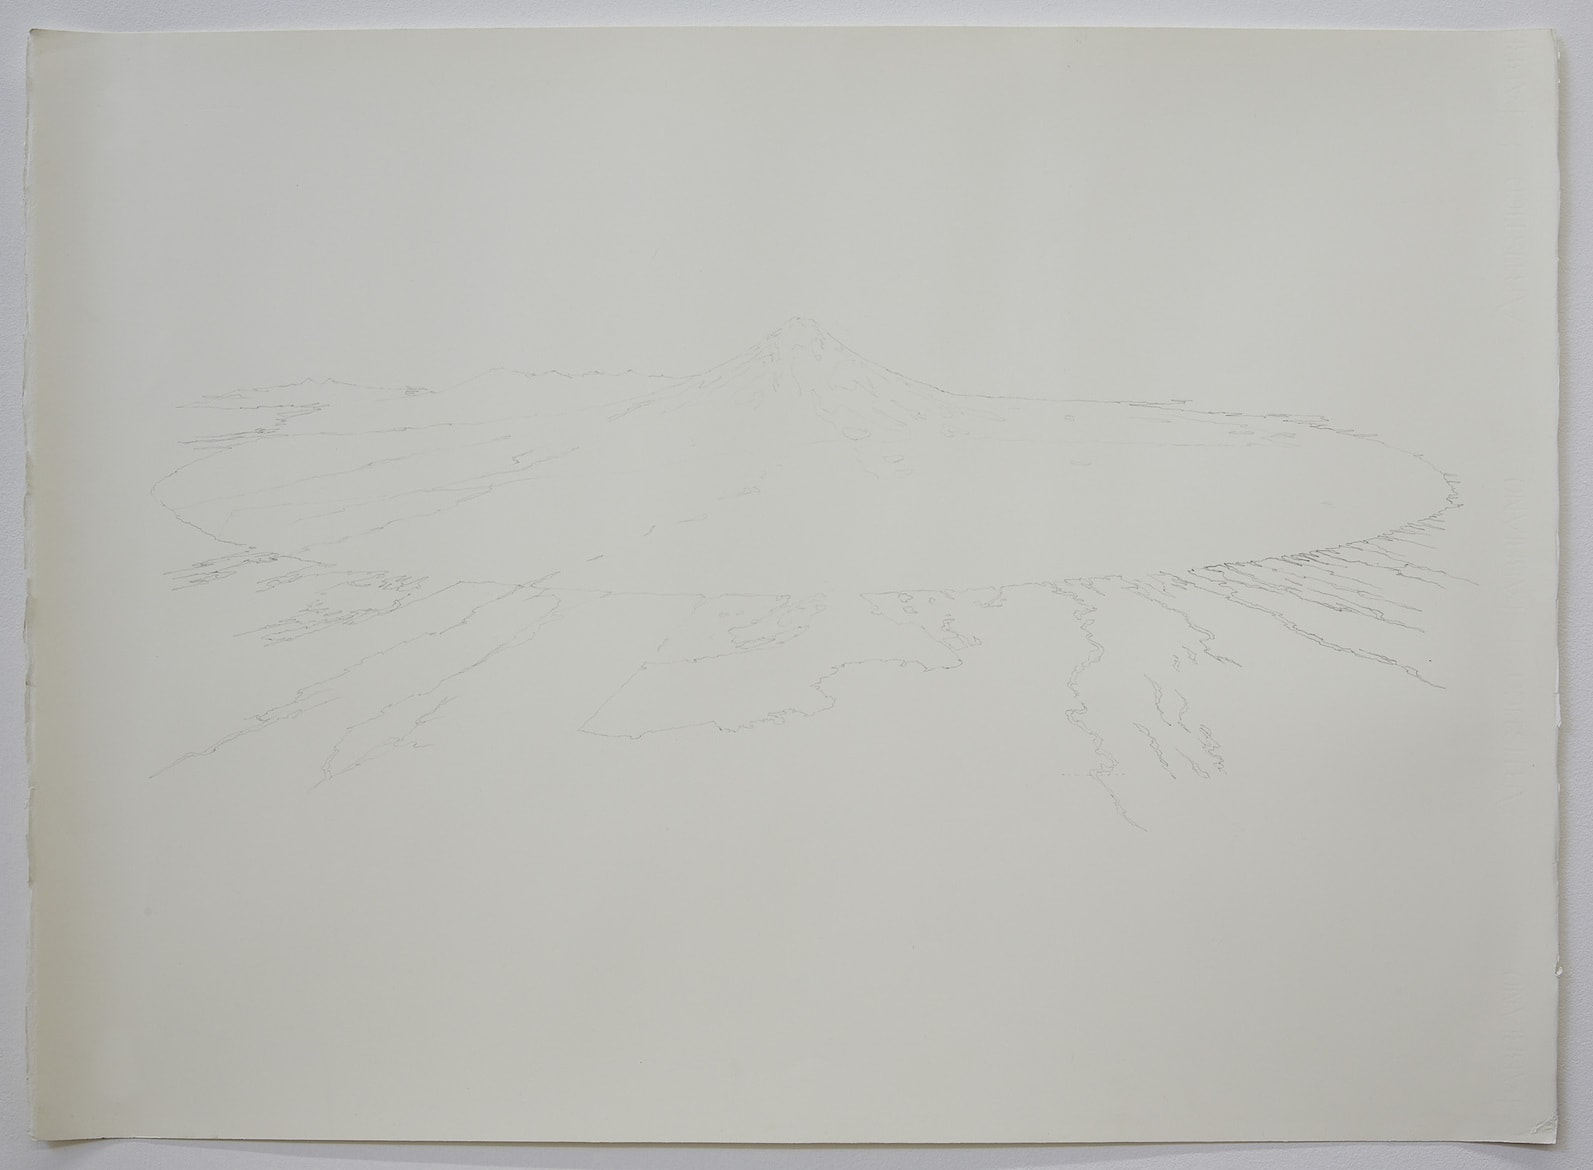 Taranaki drawing I', 2018, watercolour on paper, 76 x 56 cm